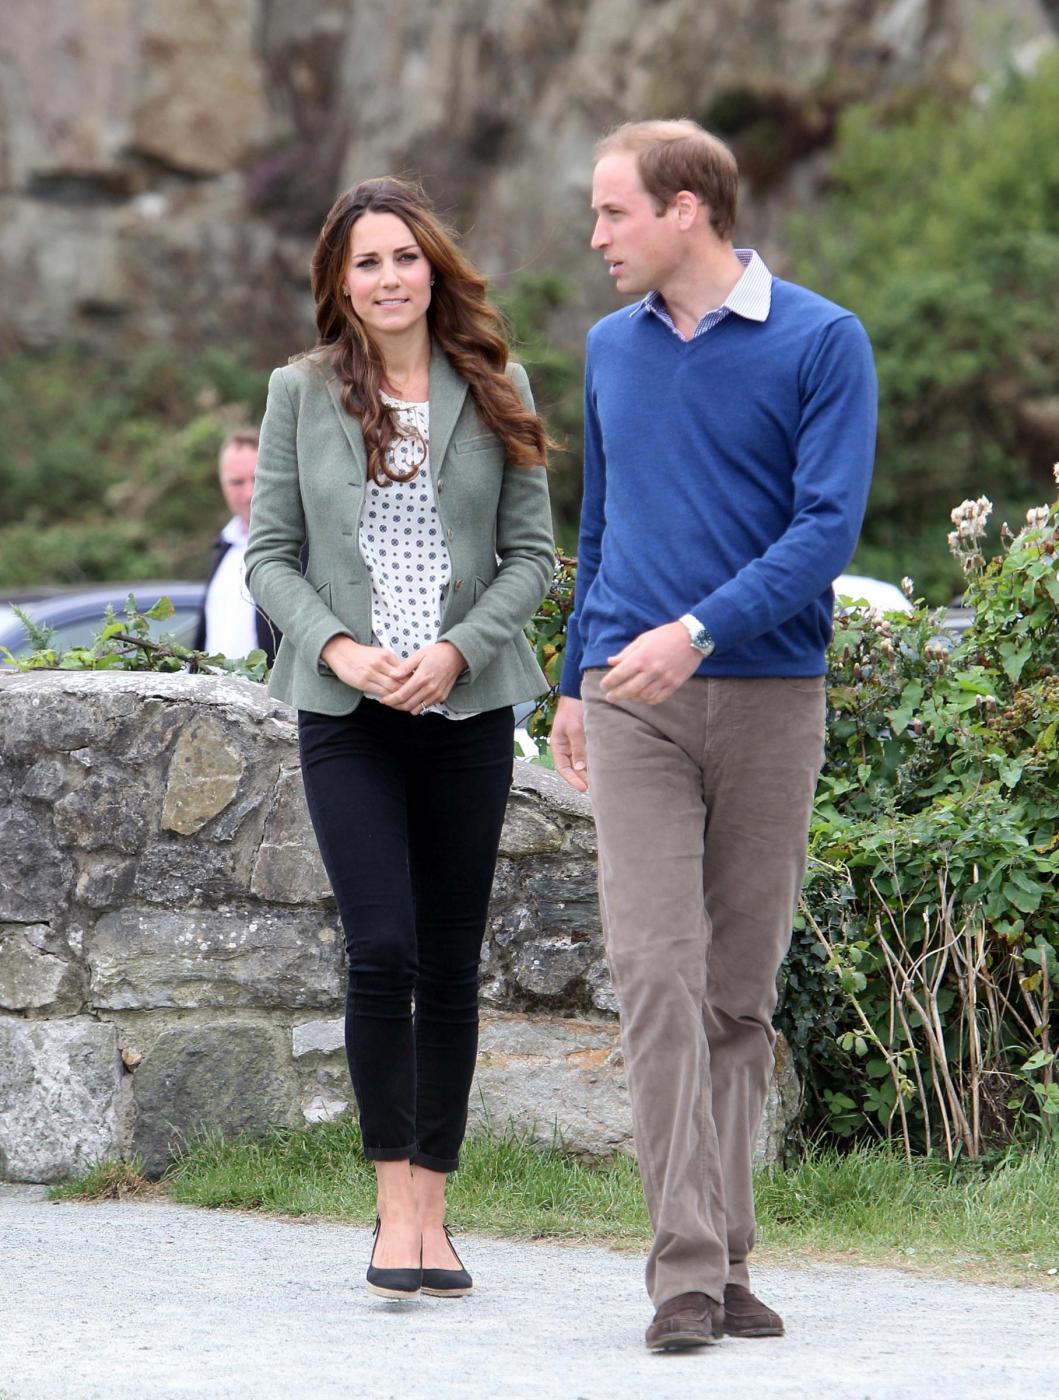 Kate Middleton: magrissima e in forma a pochi giorni dal parto